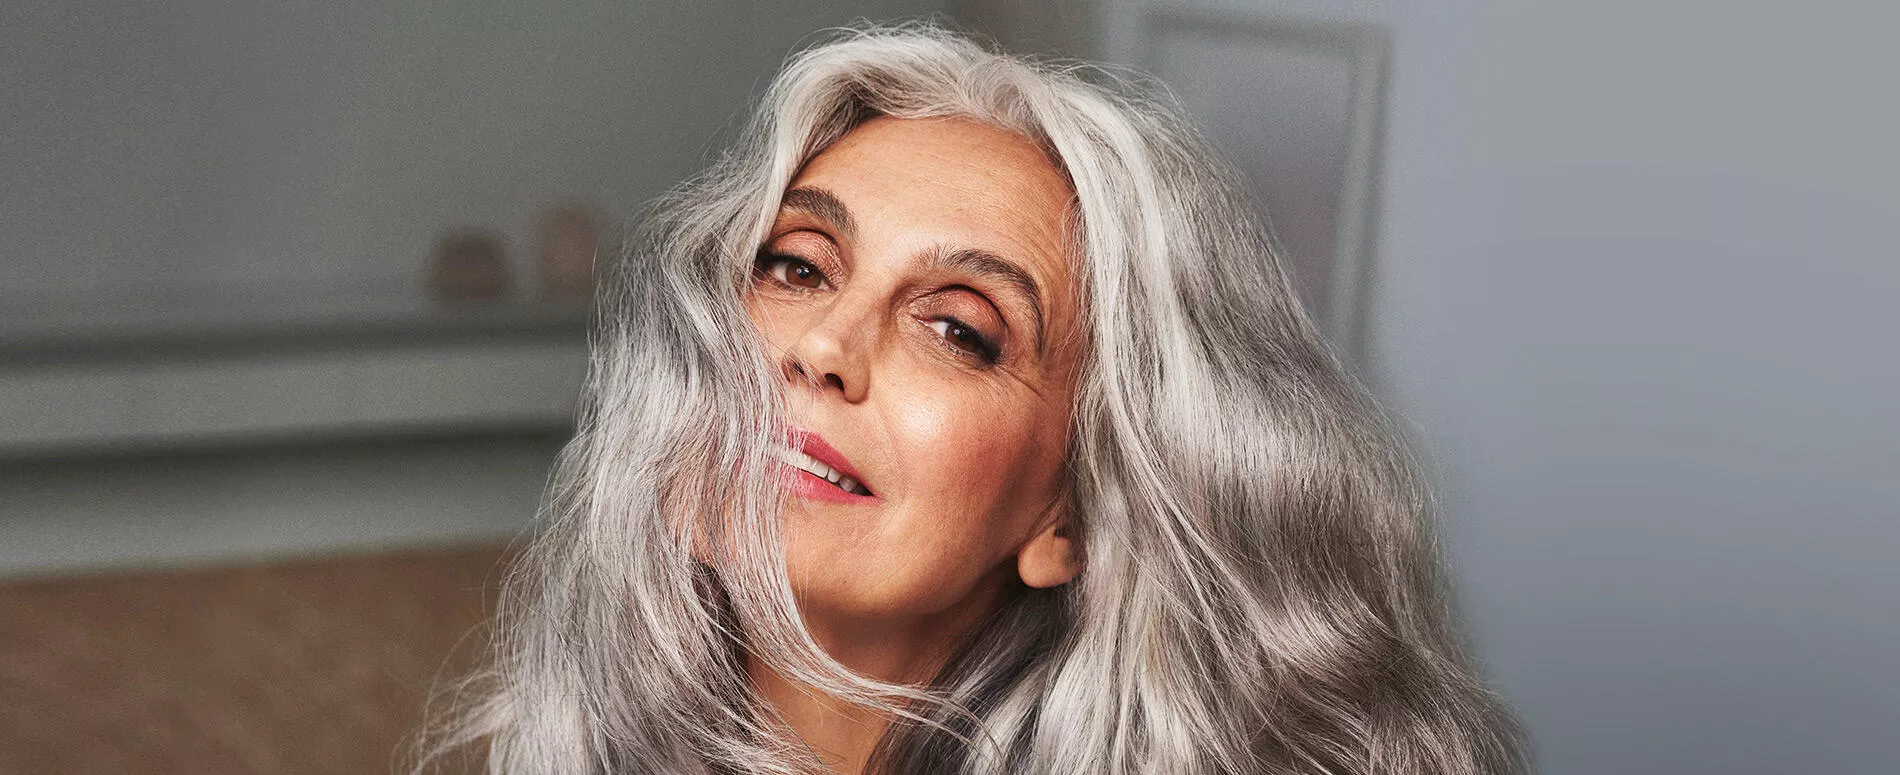 Femme aux cheveux entièrement argentés obtenus grâce au True Grey Wella Professionals